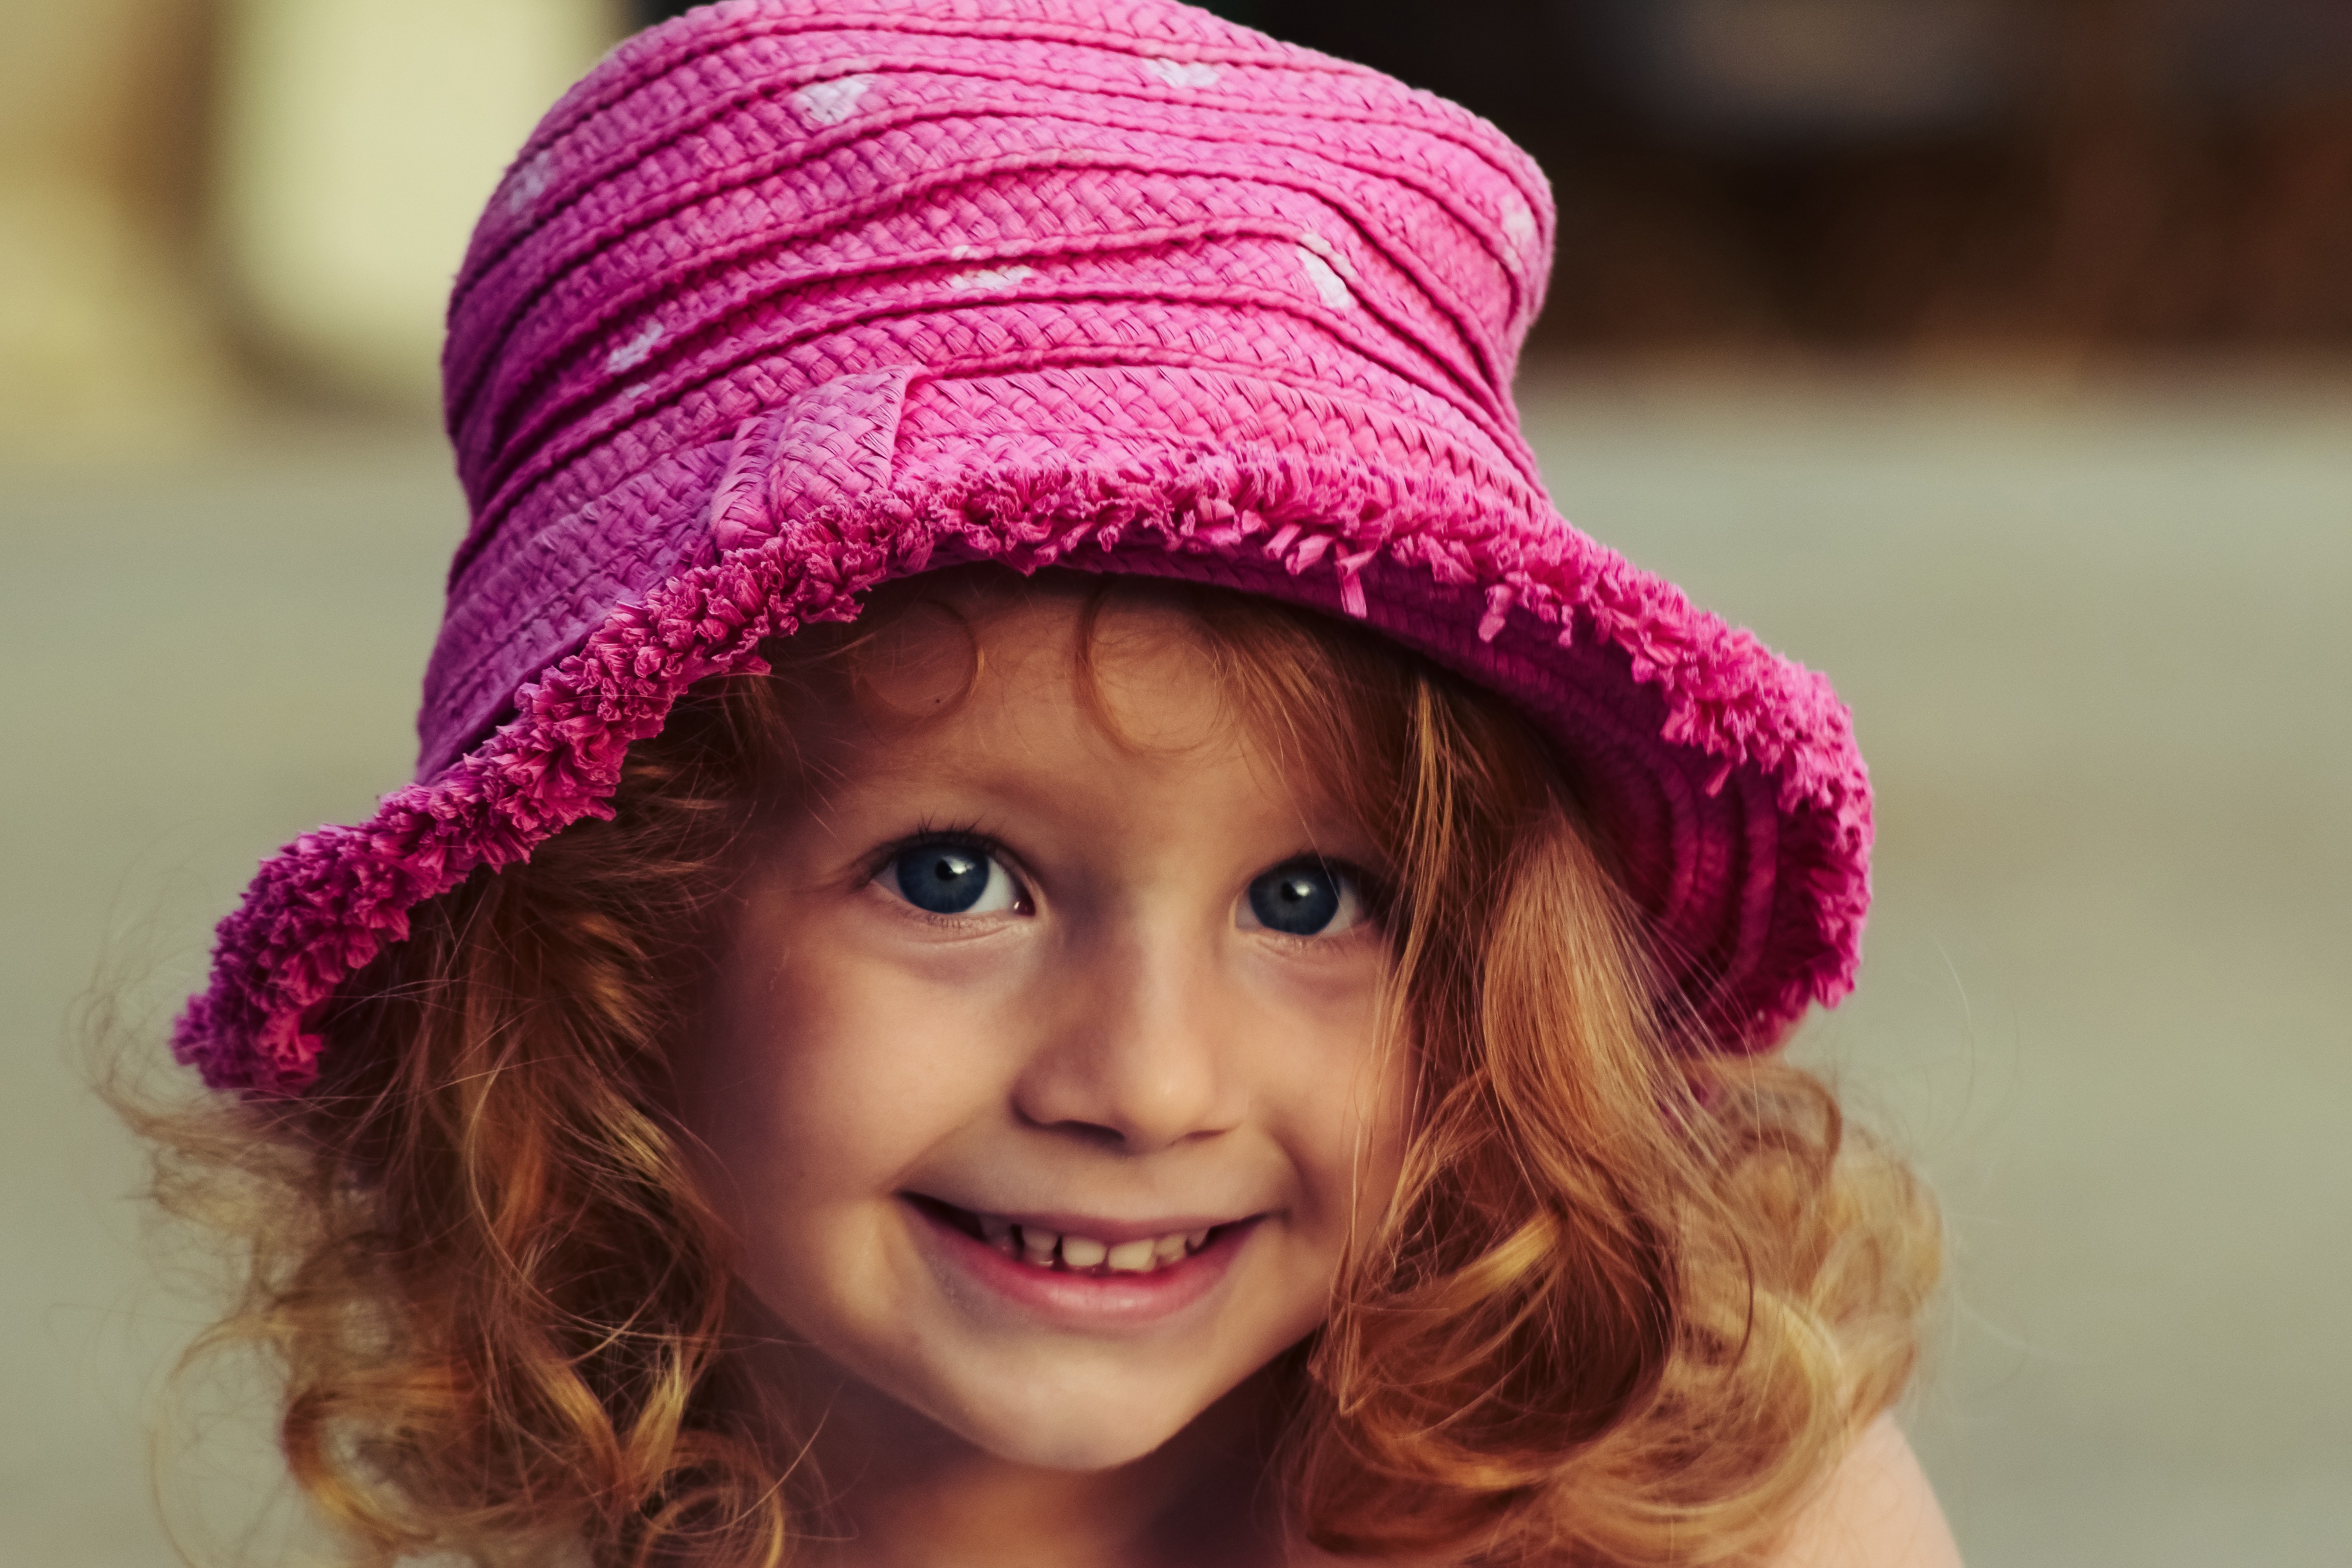 Девочка улыбается мальчику. Девочка в розовой шляпе. Девочка улыбается. Маленькая девочка улыбается. Девочка маленькая в розовой шляпке.